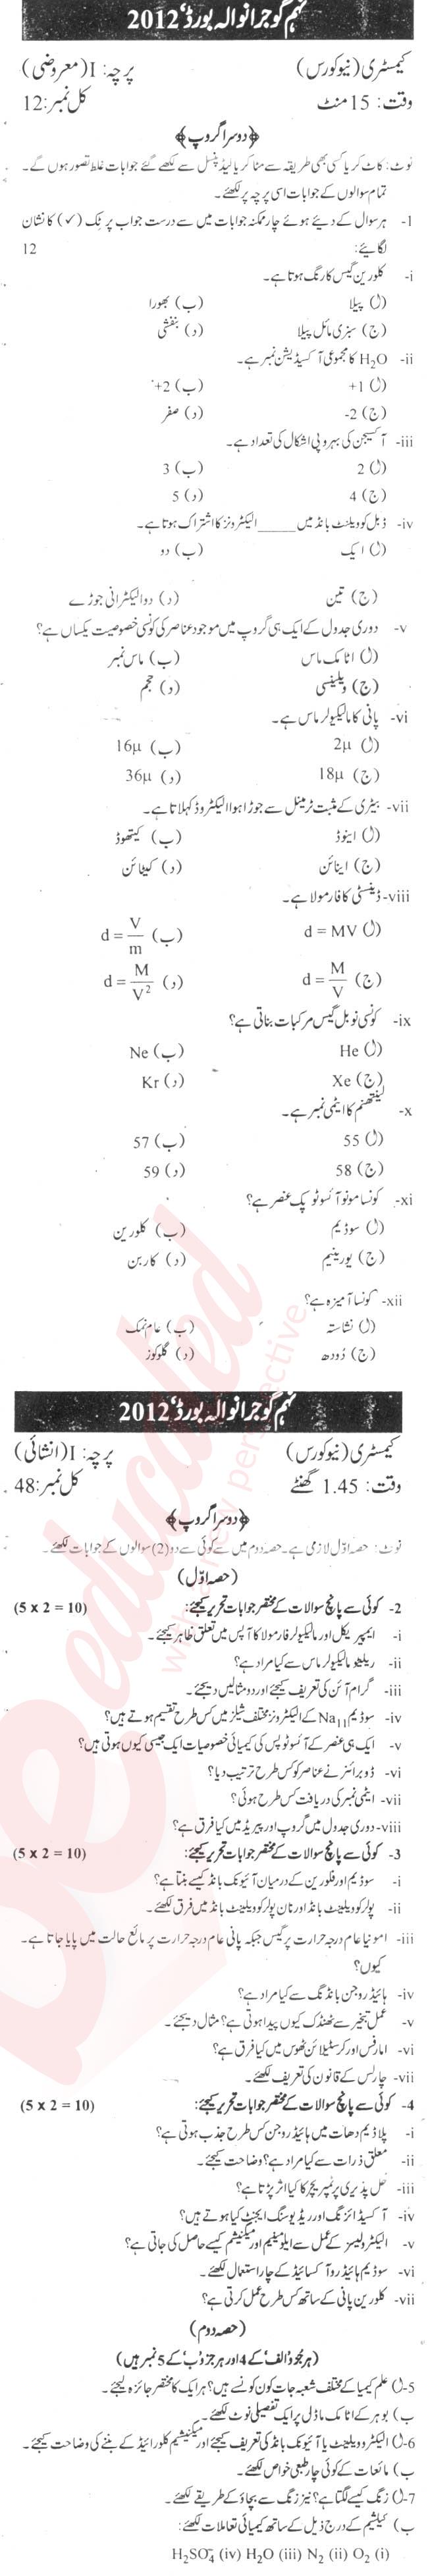 Chemistry 9th Urdu Medium Past Paper Group 2 BISE Gujranwala 2012